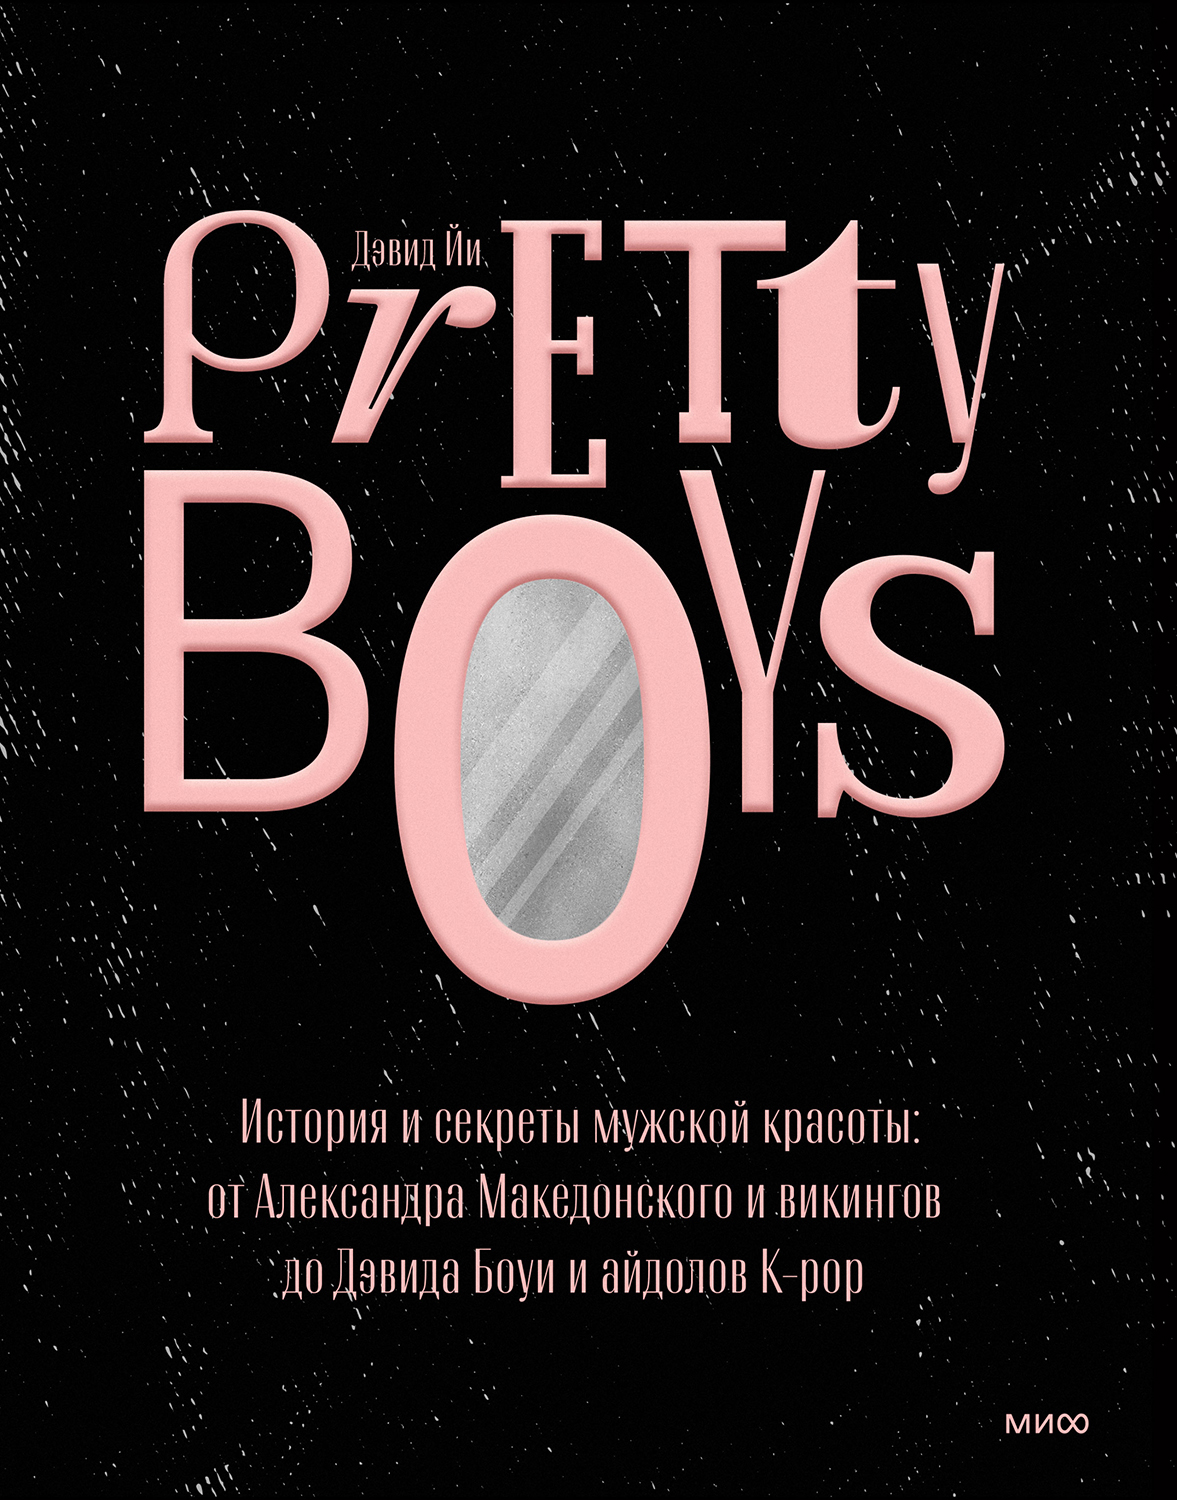 Pretty Boys. История и секреты мужской красоты: от Александра Македонского и викингов до Дэвида Боуи и айдолов K-pop - Дэвид Йи